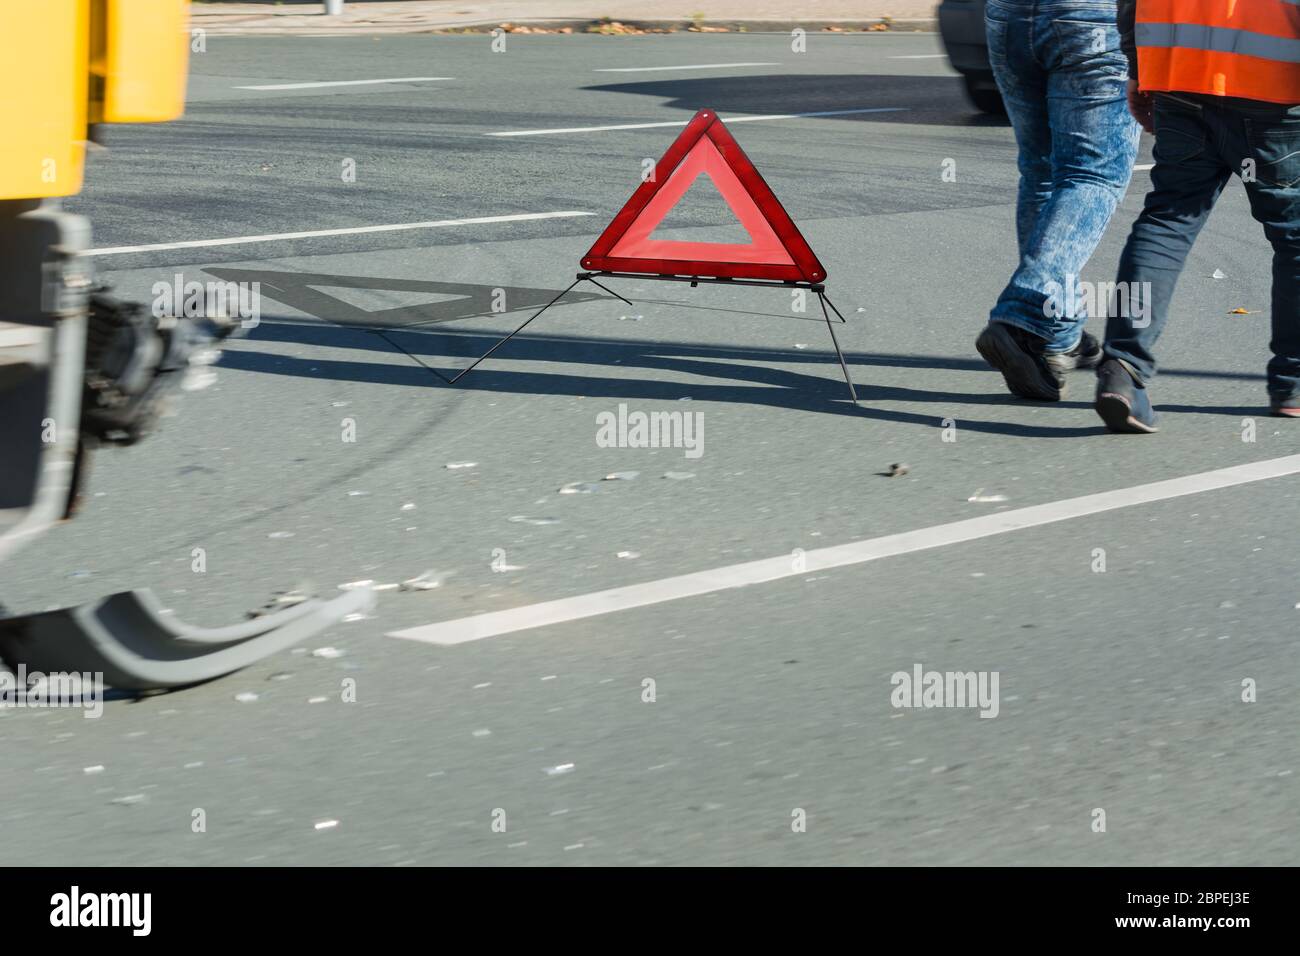 Autounfall, Unfall auf der Straße, beschädigte Autoteile und Warndreieck  nach dem Zusammenstoß in der Stadt. Stock Photo